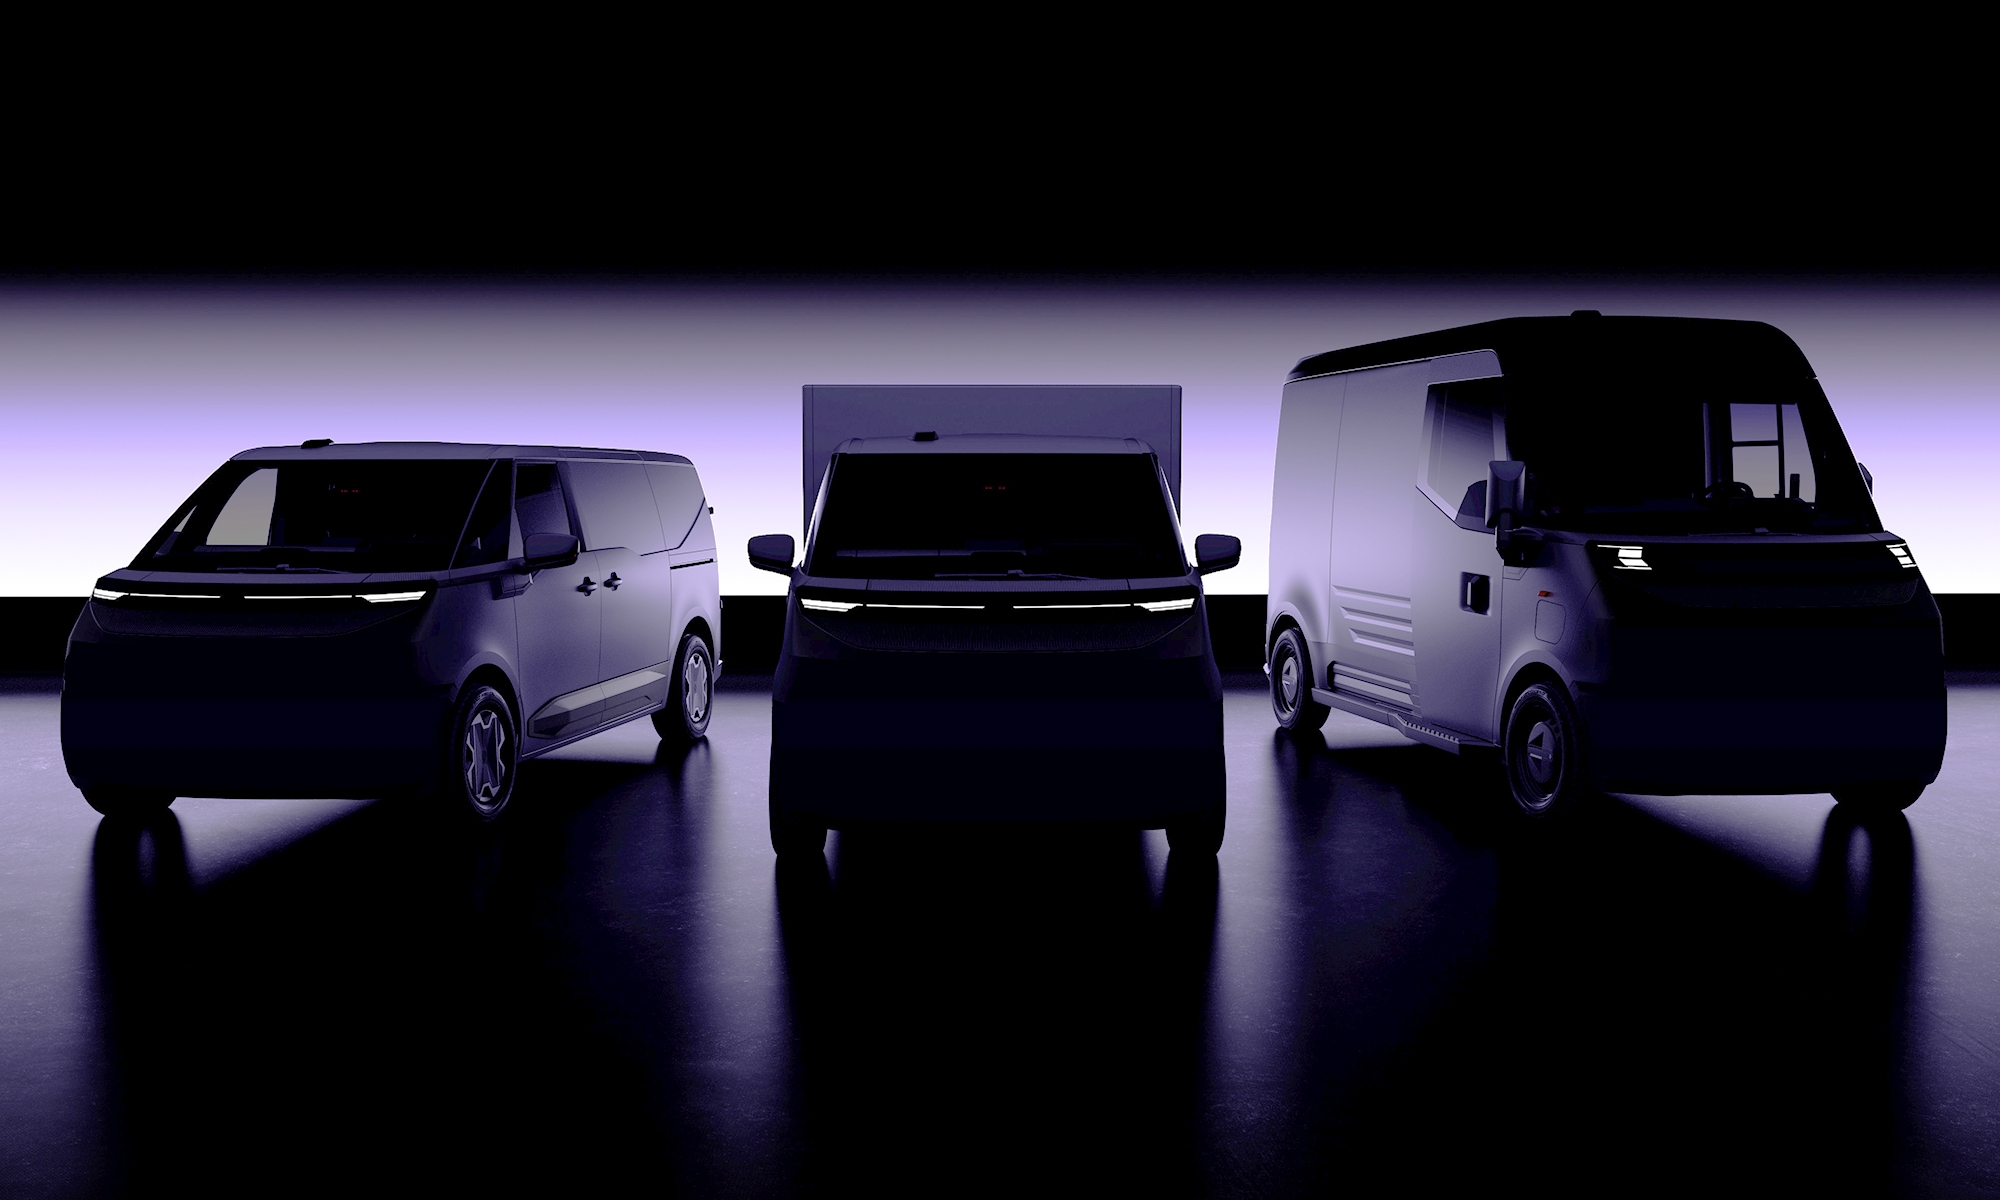 Flexis llegará oficialmente al mercado en 2026 con furgonetas eléctricas.